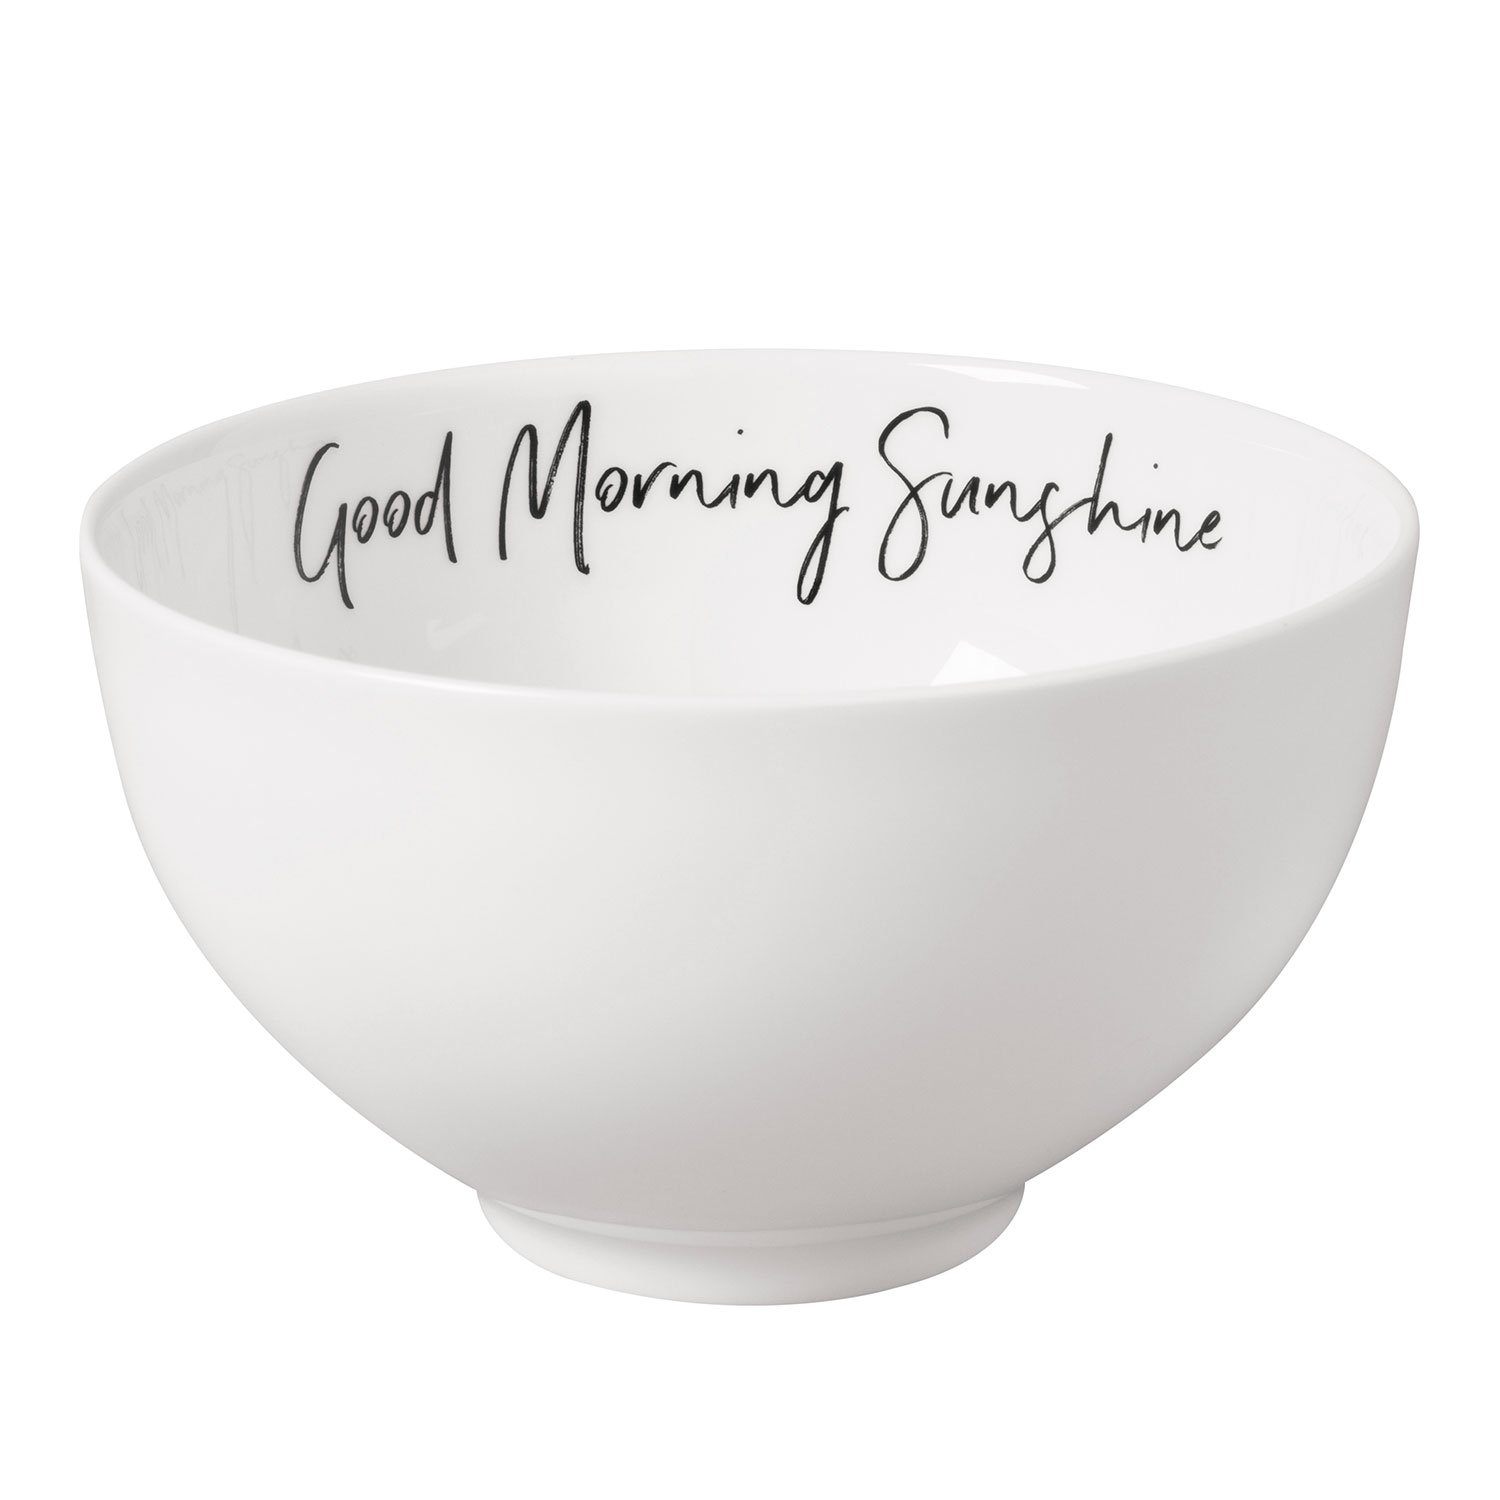 Statement Индивидуальный салатник "Good Morning Sunshine" ("Доброе утро, Cолнце") 14 см (1016216251) Villeroy & Boch - spb.v-b.ru